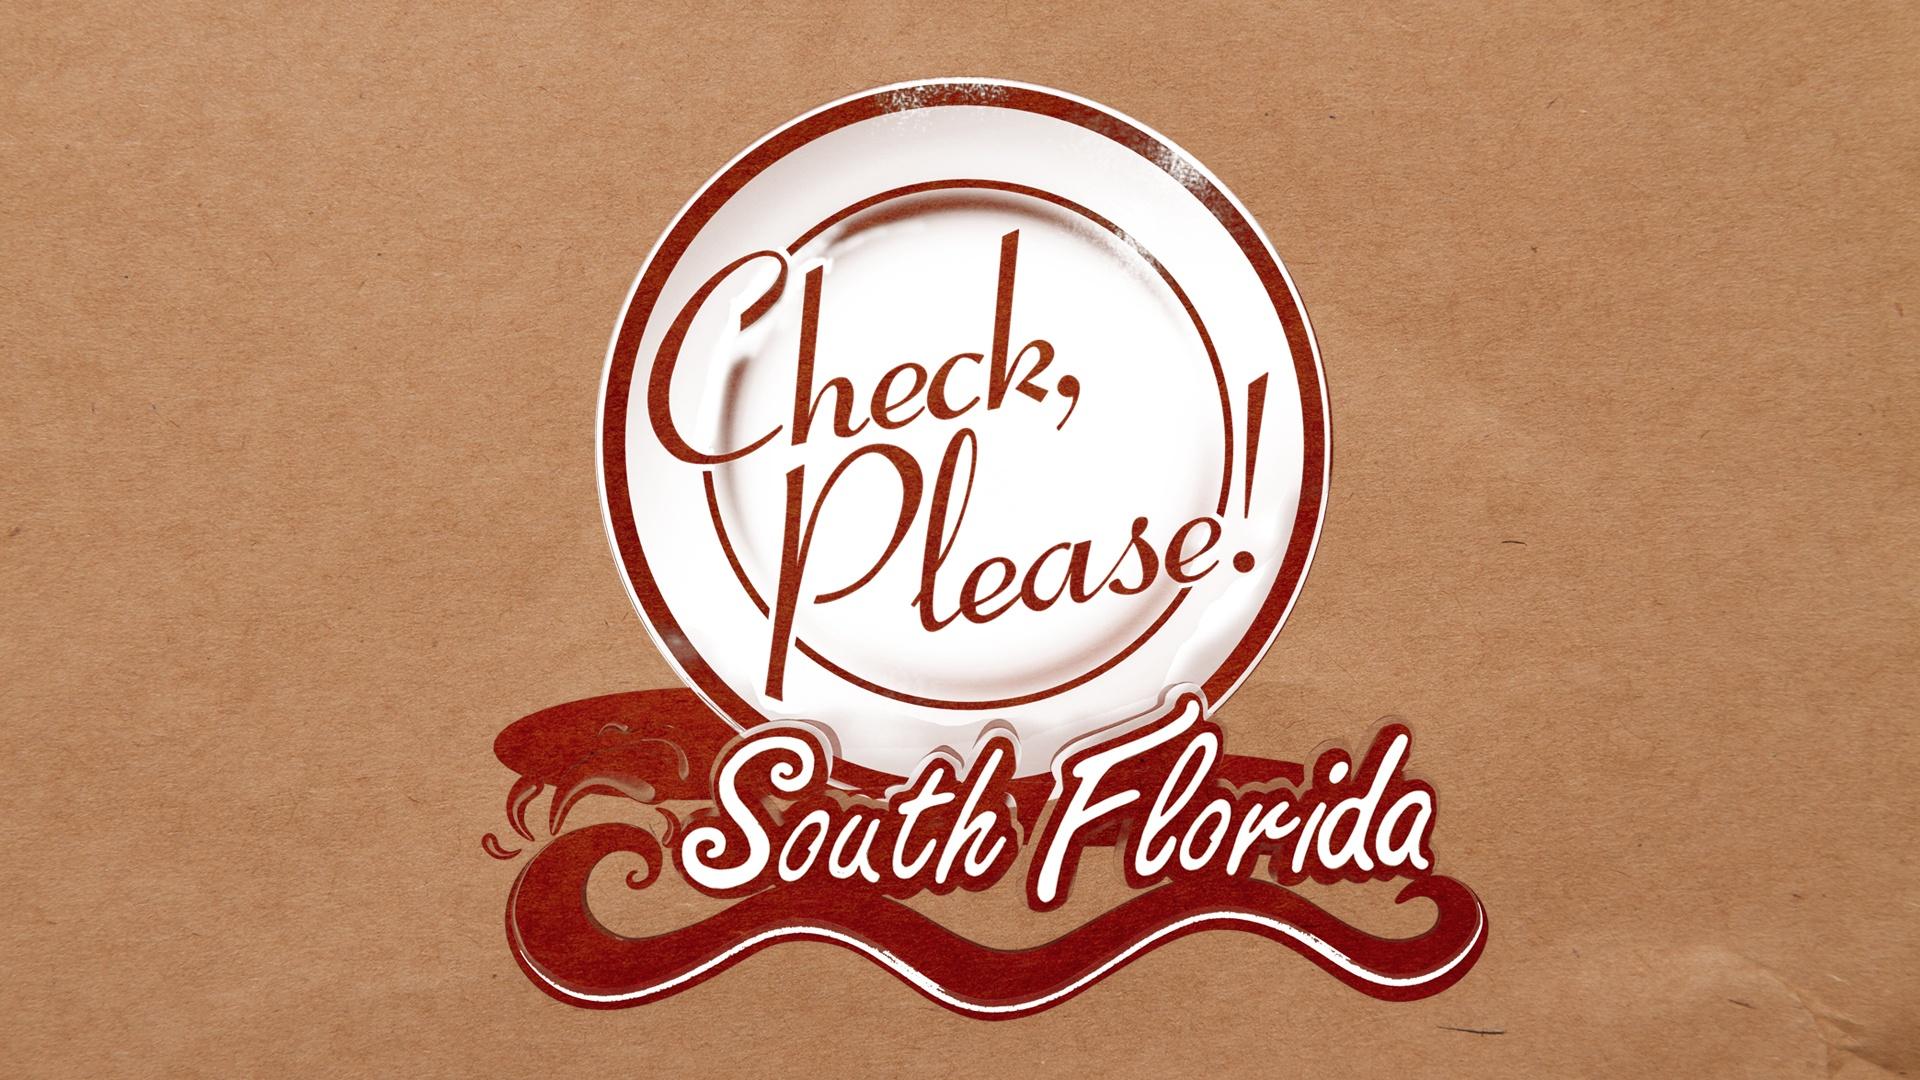 Check Please South Florida